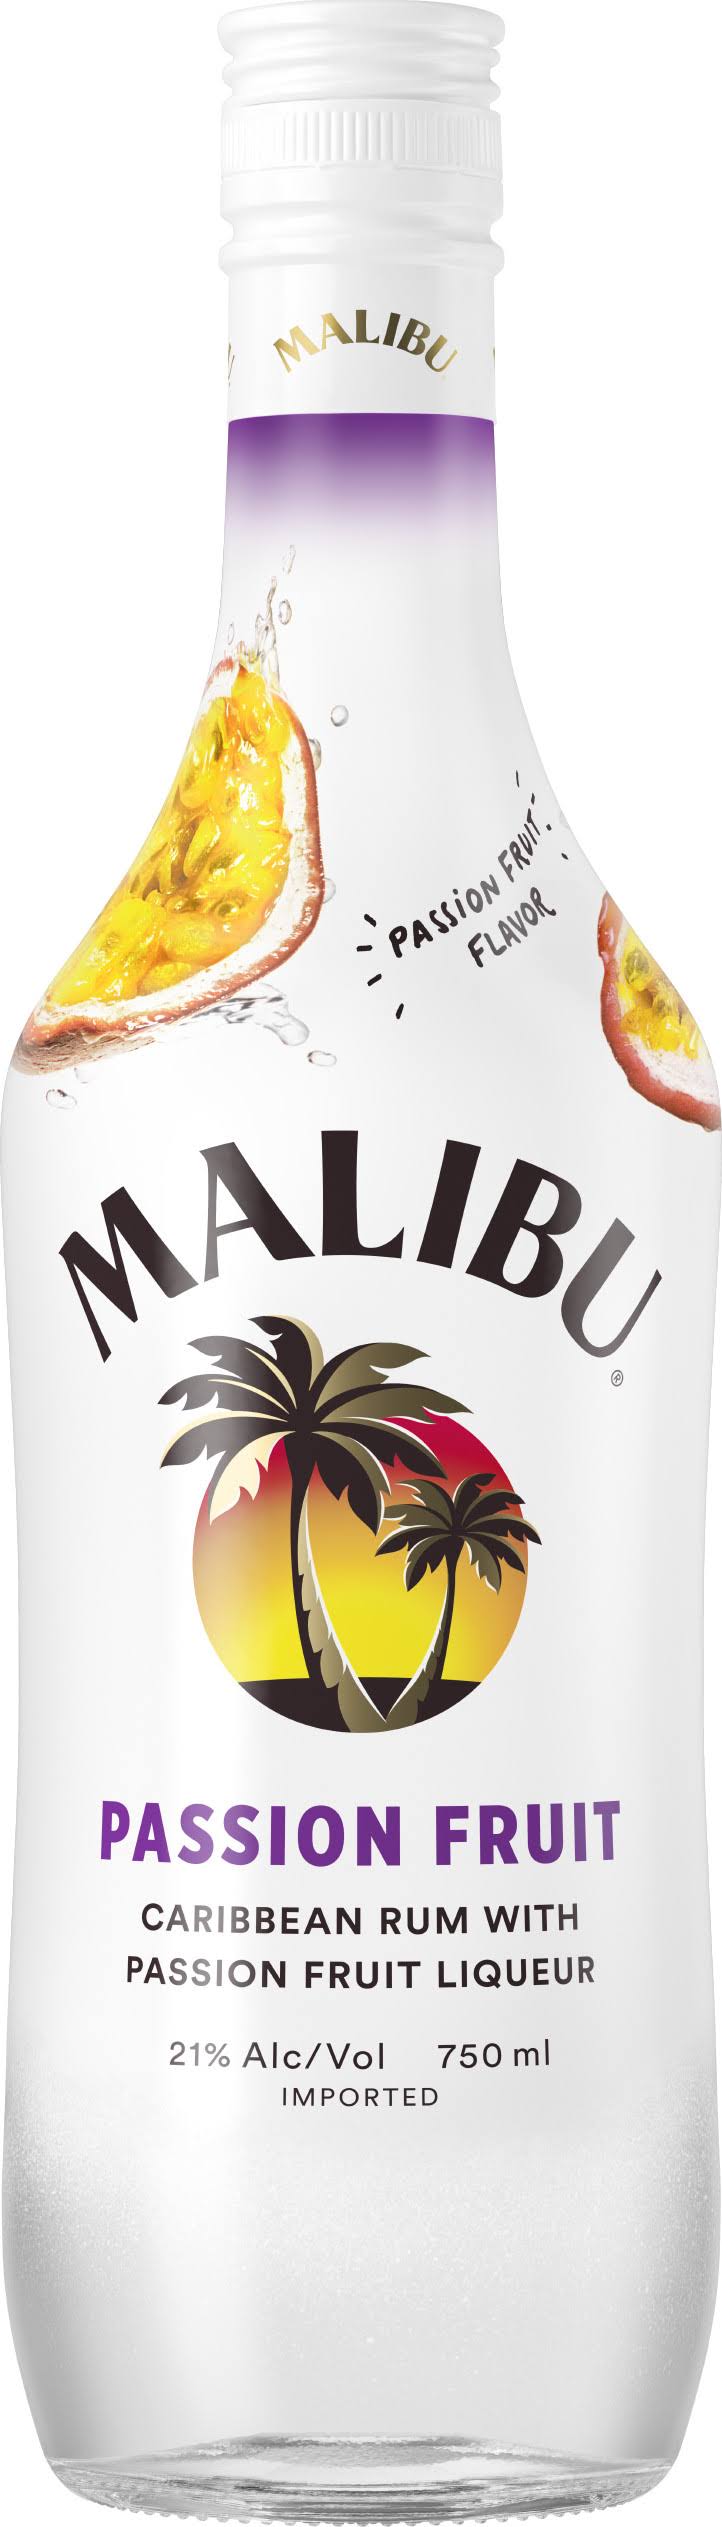 Hiram Walker & Sons Malibu Caribbean Rum - Natural Passion Fruit Flavor